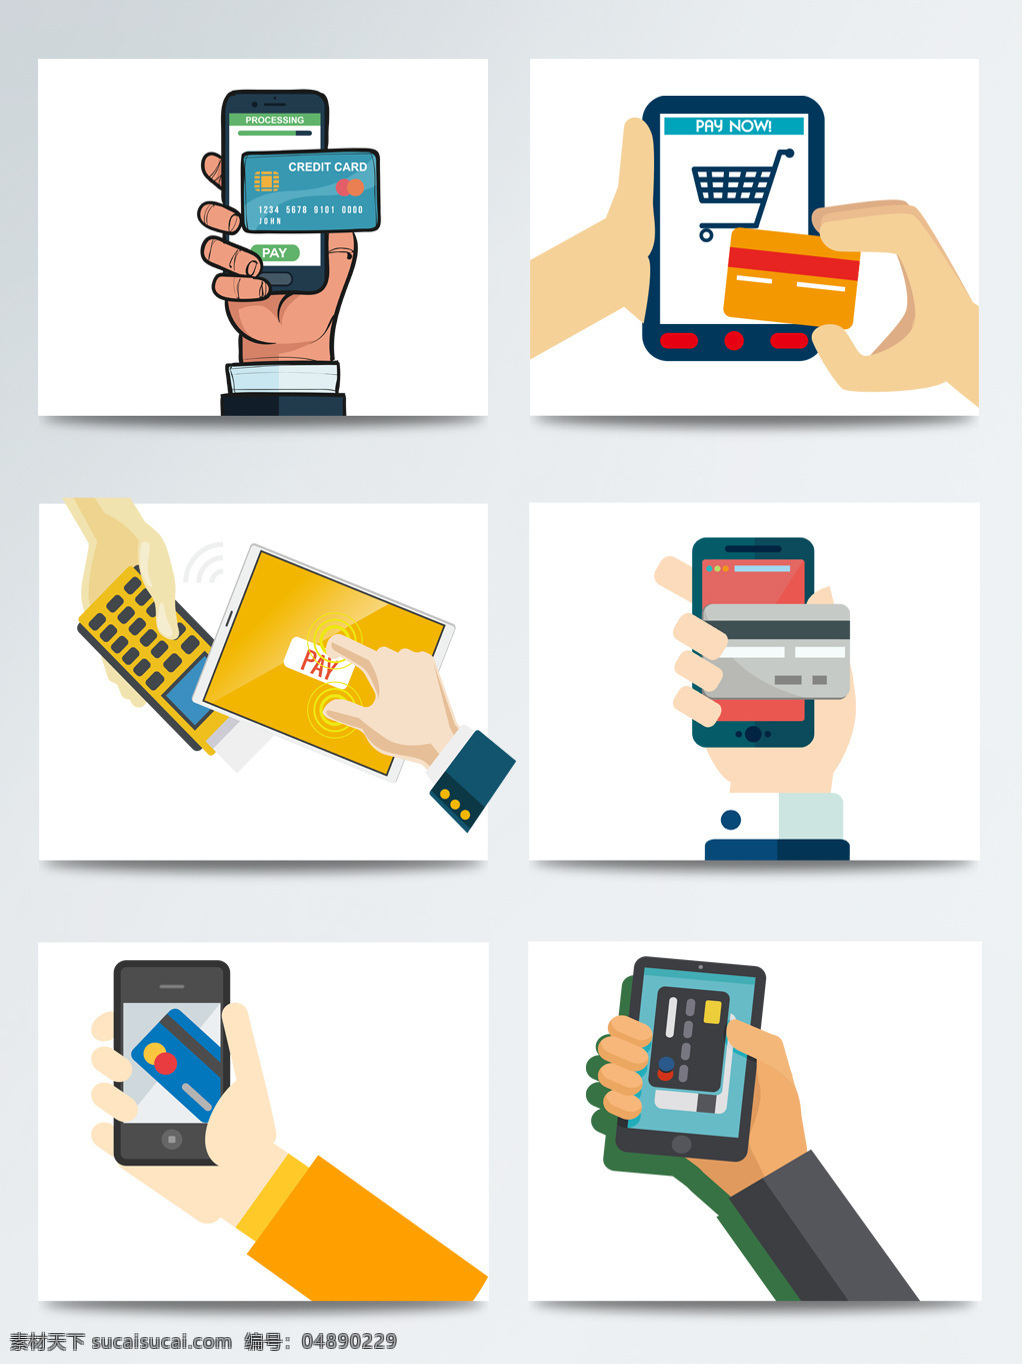 手绘 手机 付款 手持 电子货币 电子商务 金融机构 卡通 手持卡 手机支付 刷卡 图标 网购支付 网上超市 移动支付 元素 支付方式